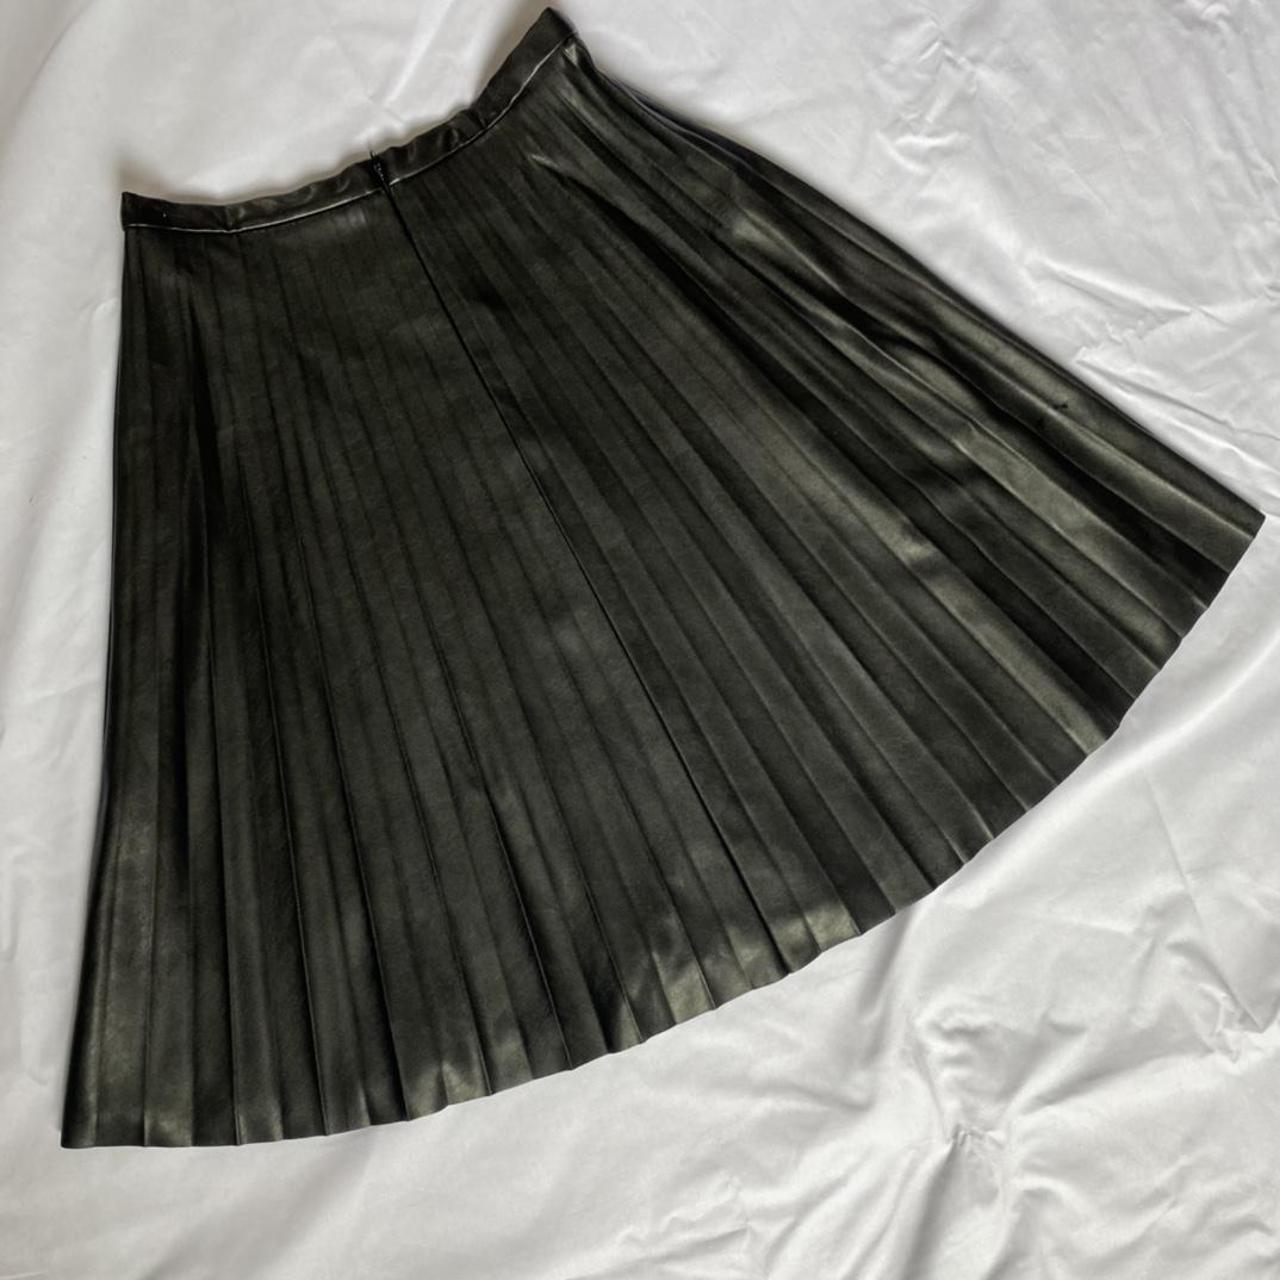 J.Crew Women's Black Skirt (2)